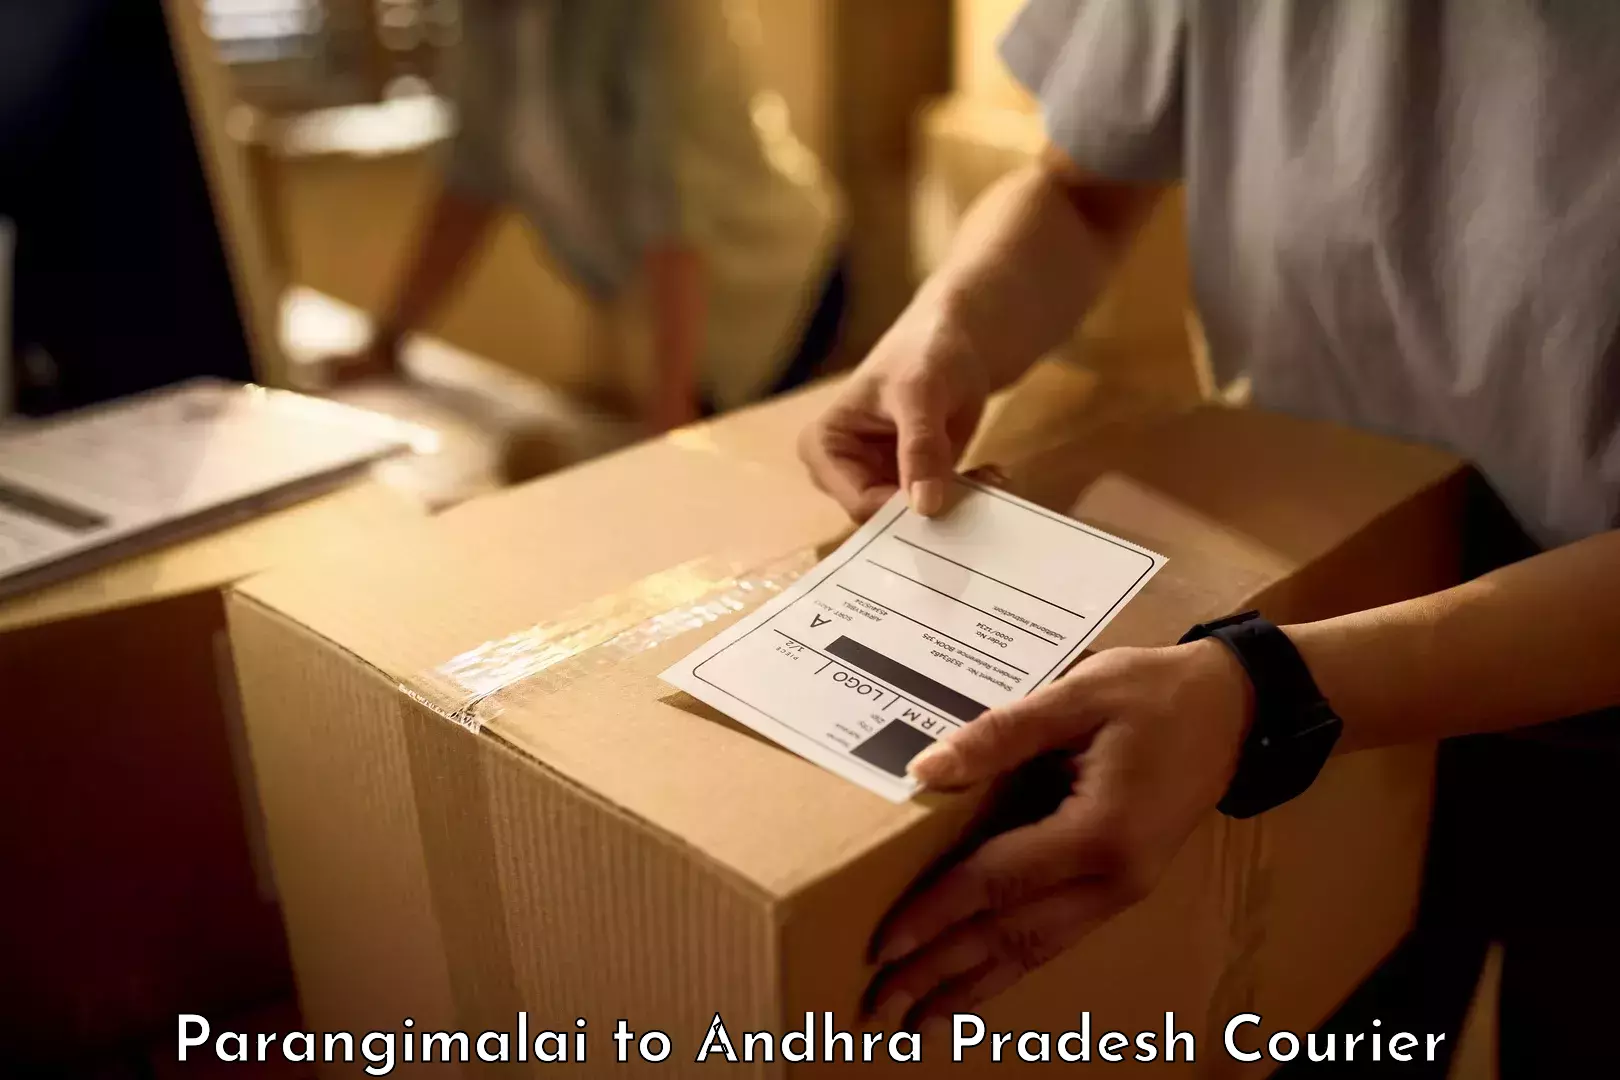 Nationwide luggage courier Parangimalai to Pedanandipadu